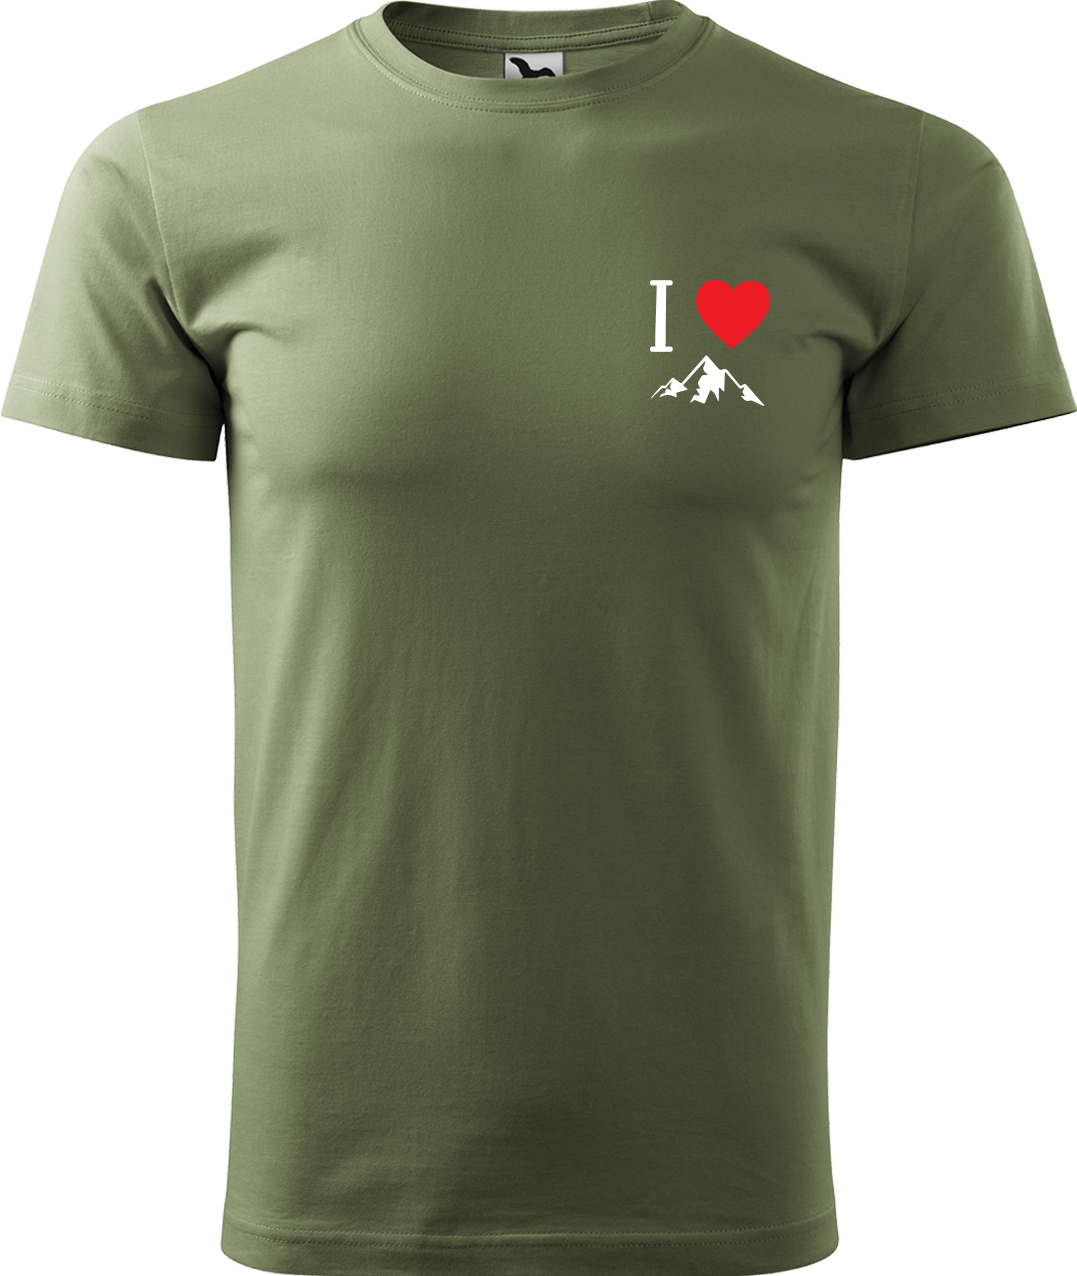 Pánské tričko na hory - I love mountain Velikost: S, Barva: Světlá khaki (28), Střih: pánský